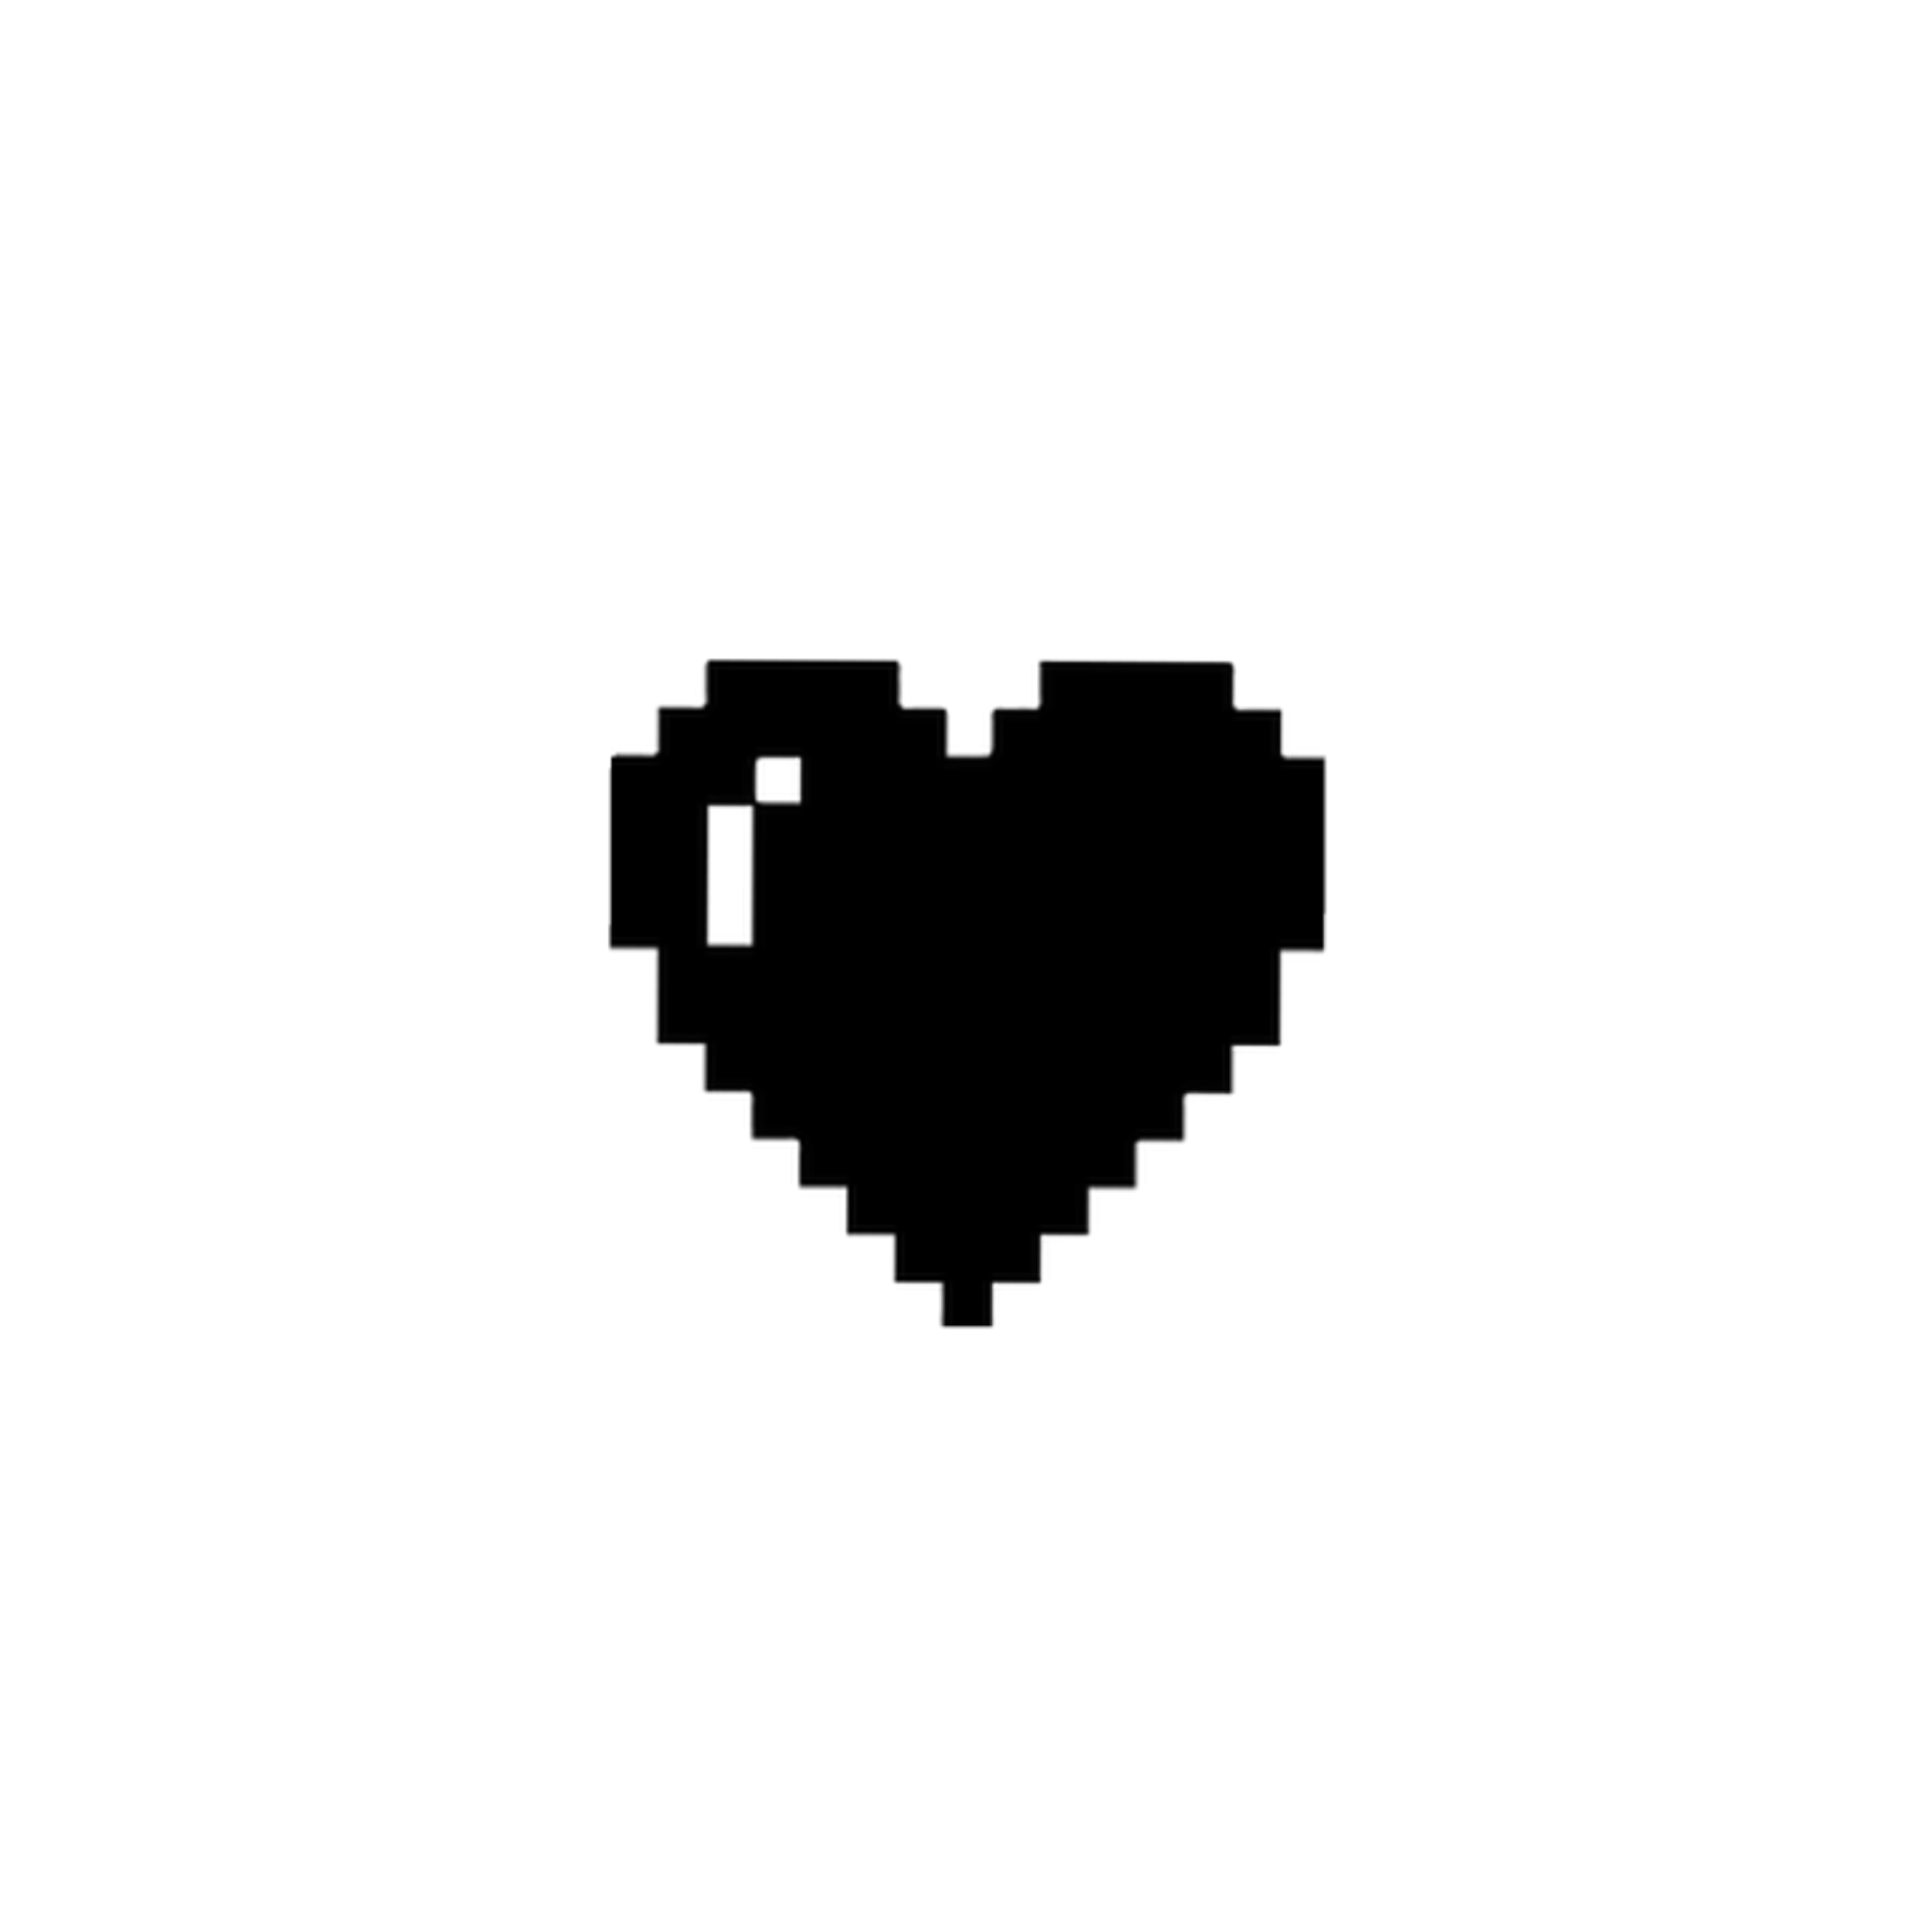 сердечко пиксель чёрный sticker by @aleksandrakot1855